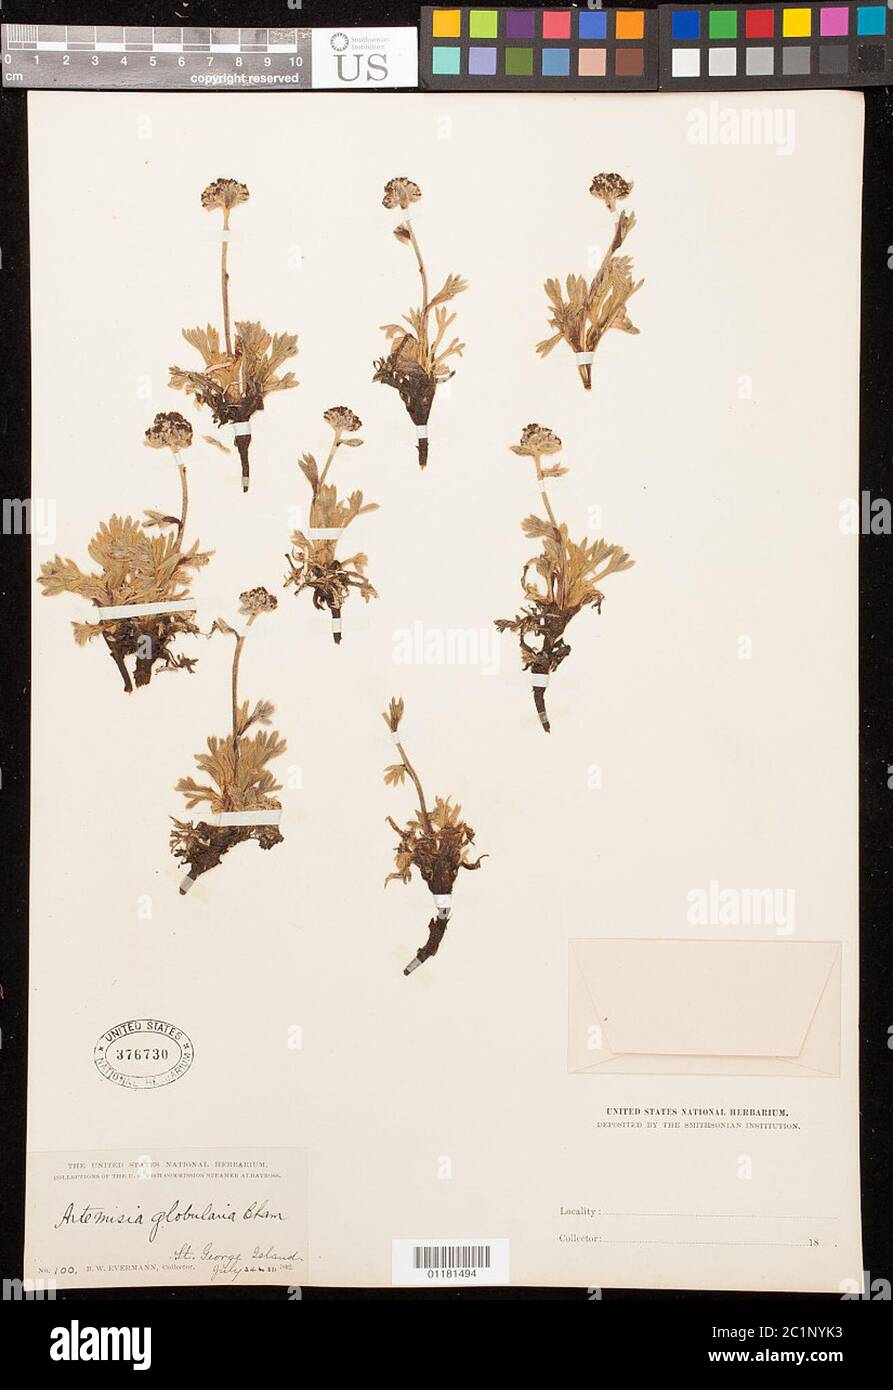 Artemisia globularia Cham ex Besser Artemisia globularia Cham ex Besser. Stock Photo